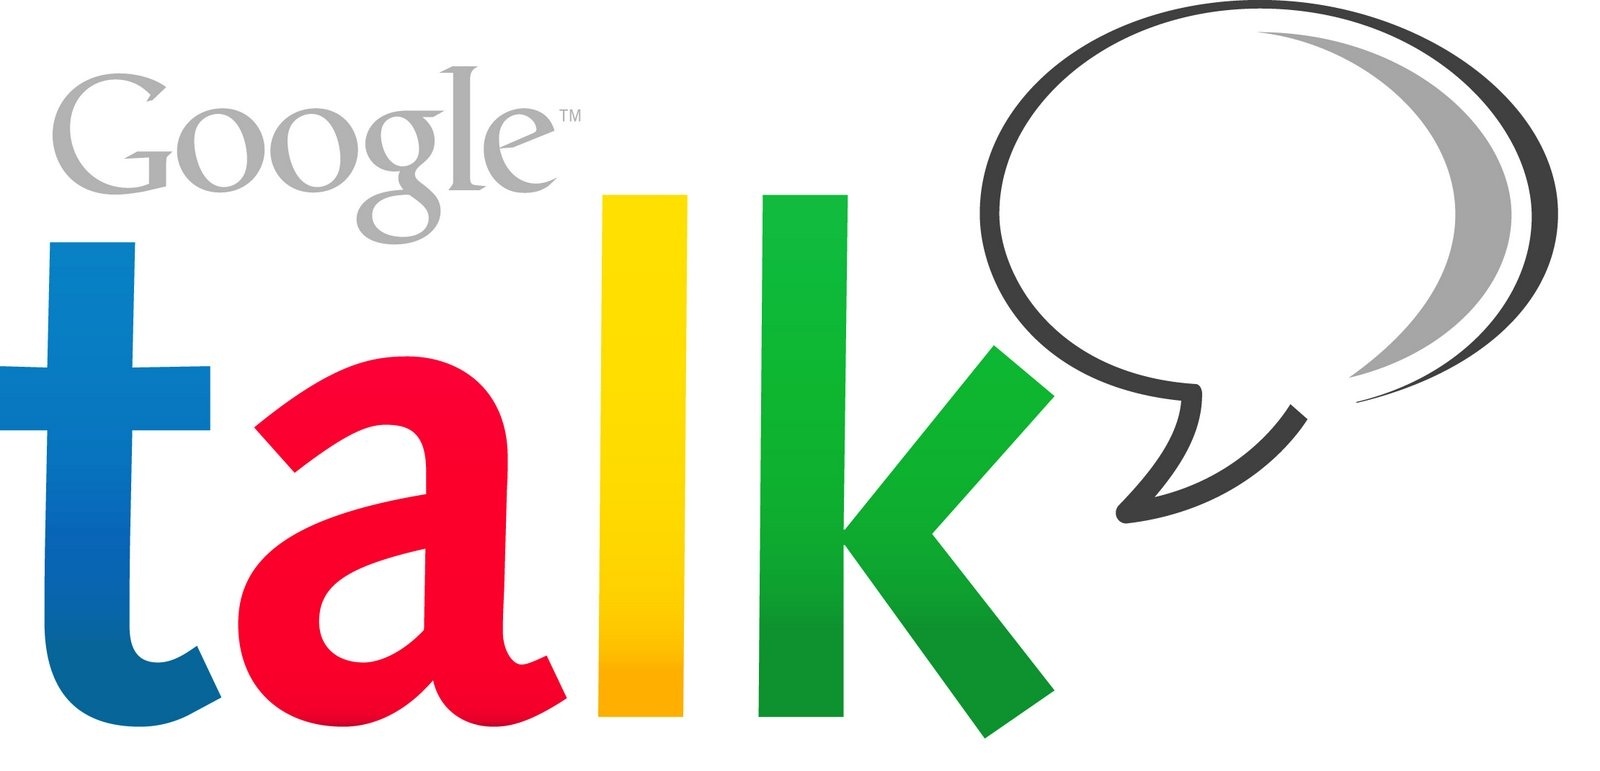 Google Talk все: история одного из старейших сервисов Google. Живые и мертвые альтернативы от Google - 7